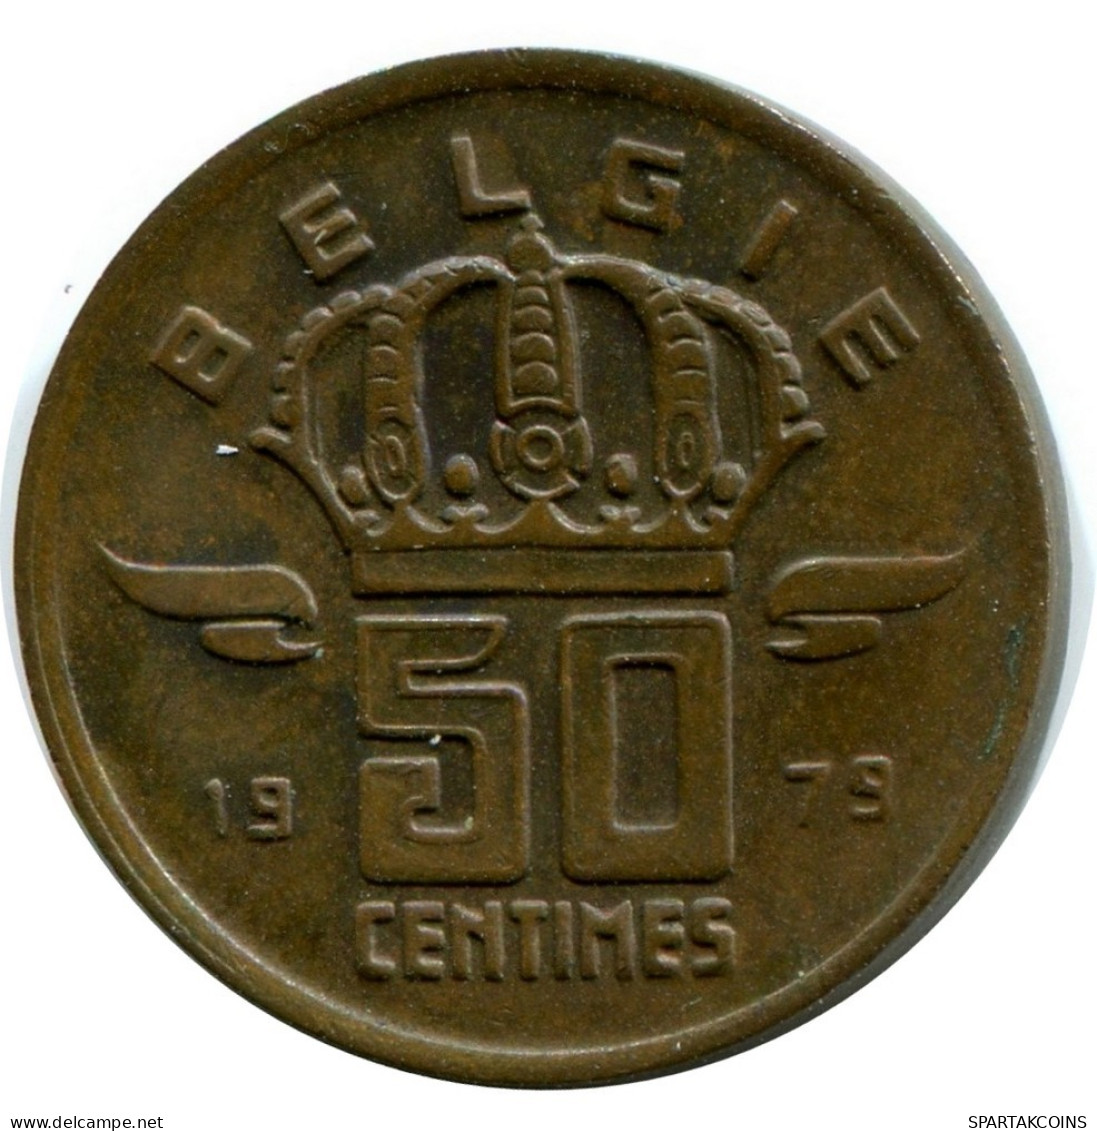 50 CENTIMES 1979 DUTCH Text BELGIUM Coin #AW925.U.A - 50 Cent